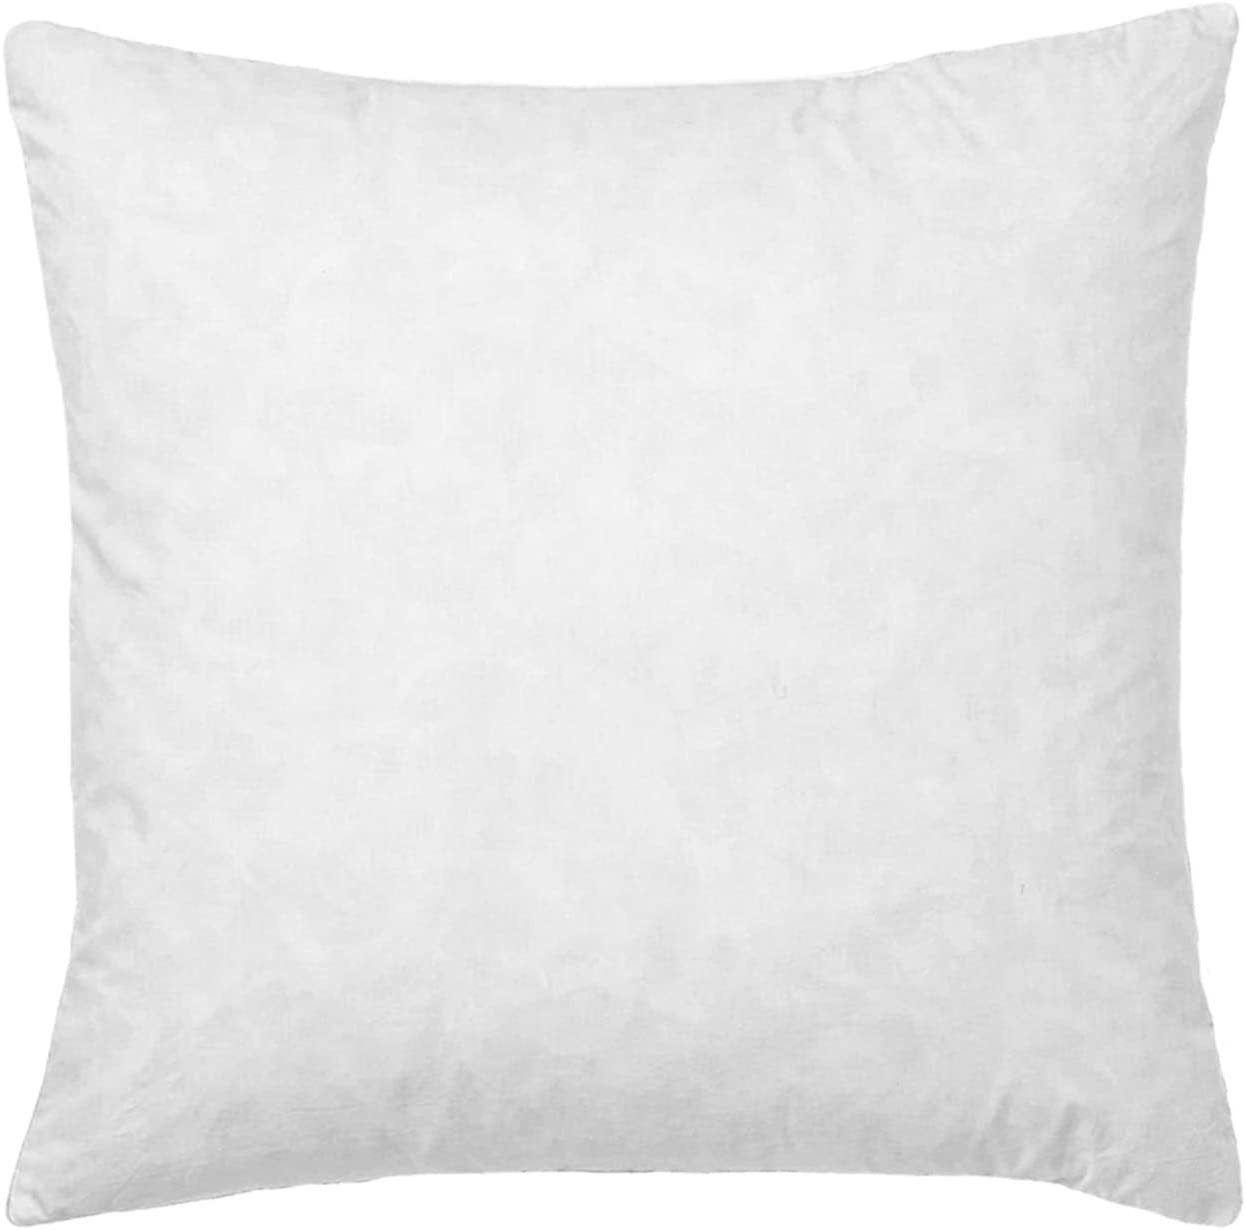 18 X 18 Pillow Insert - Ranch Junkie Mercantile LLC